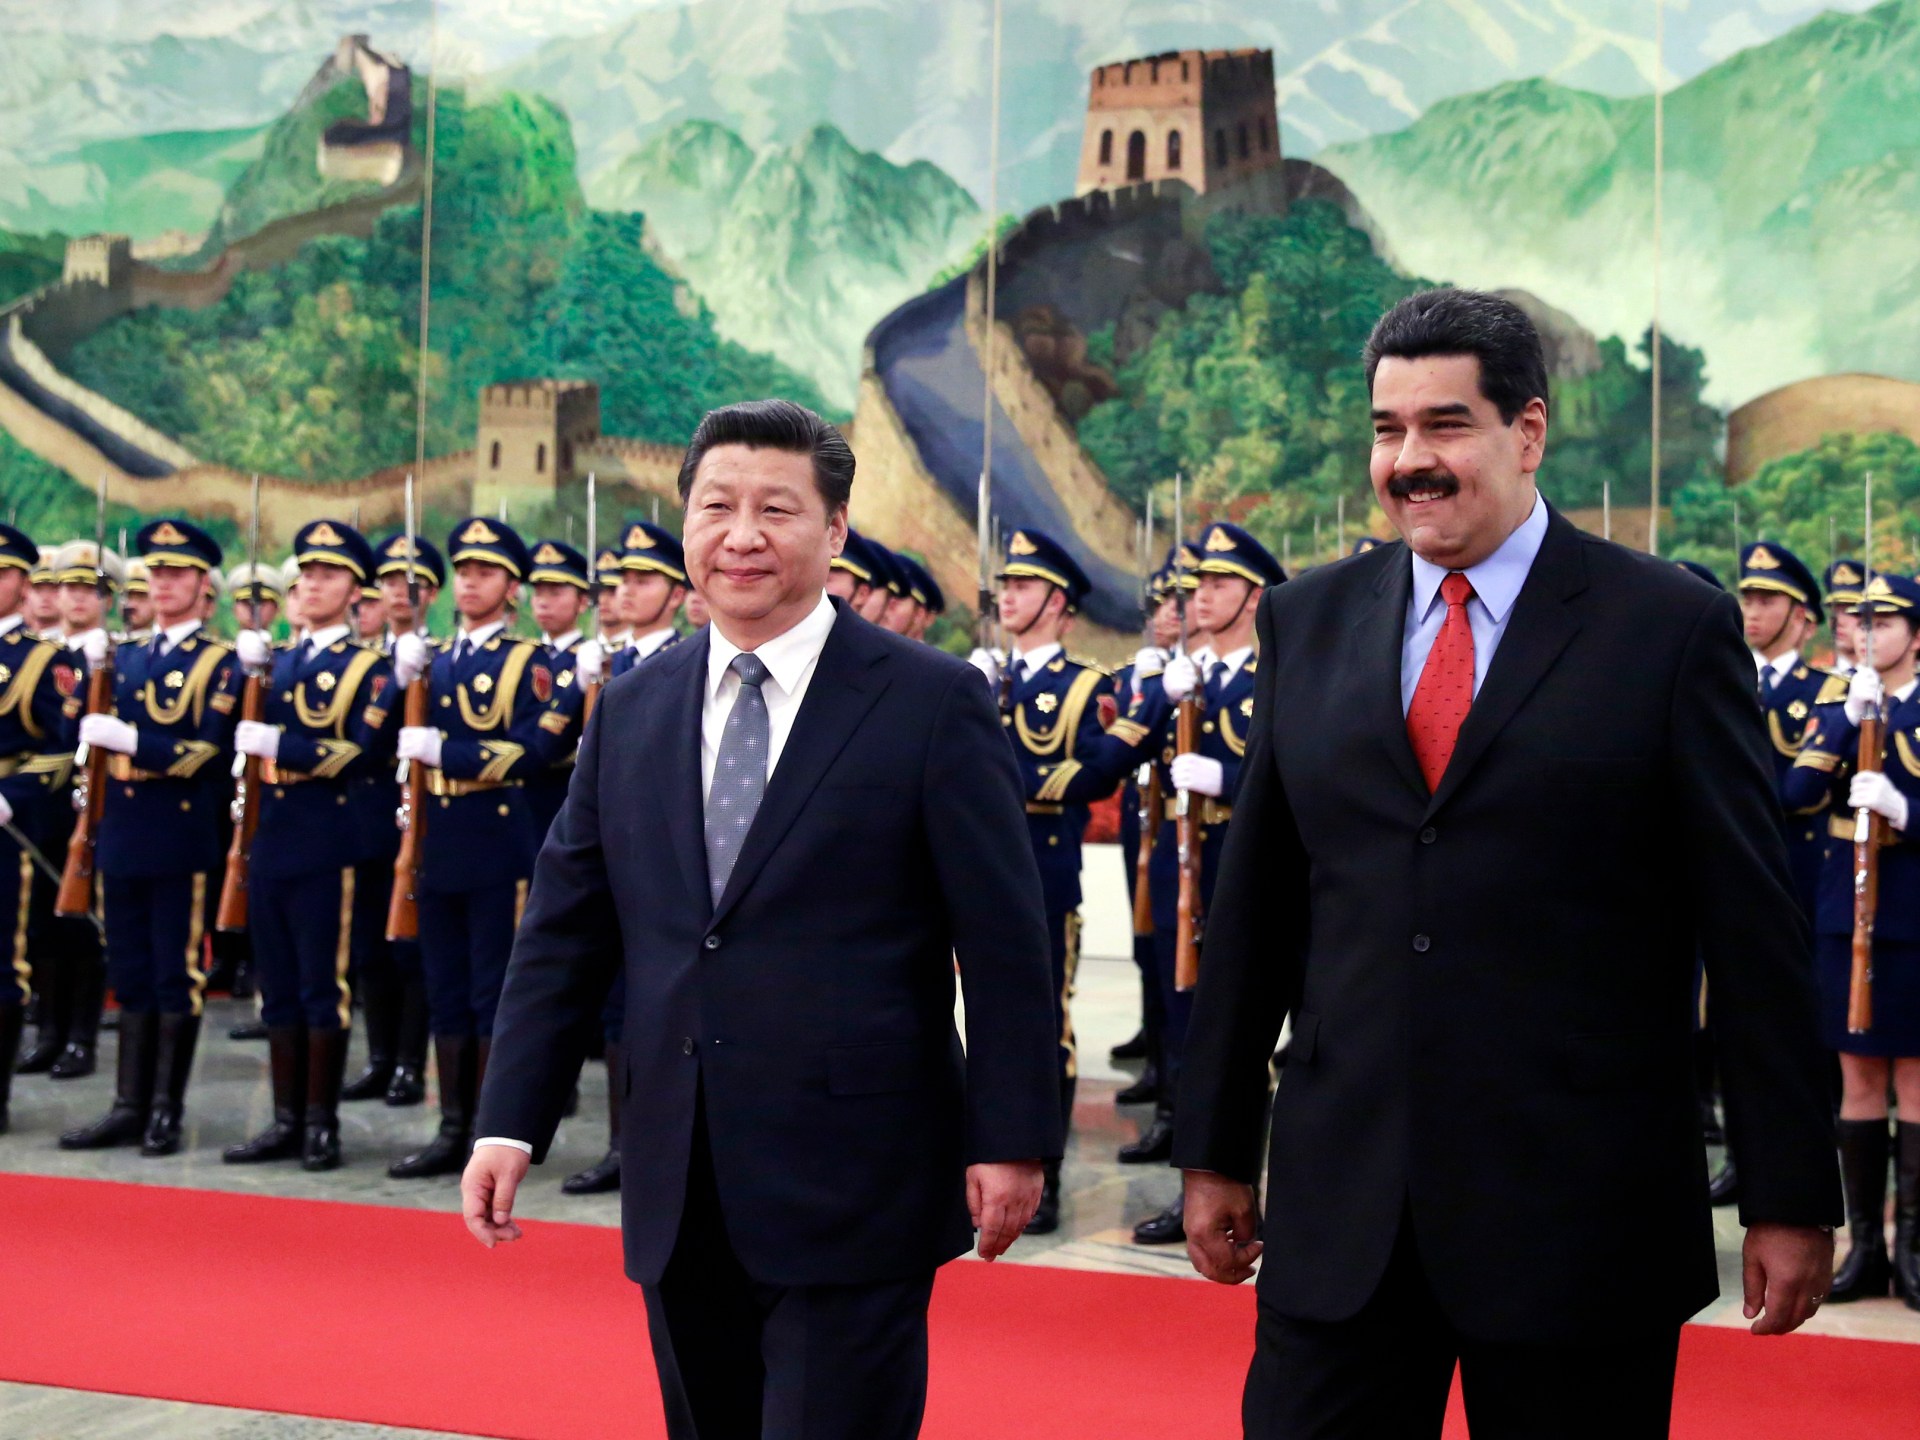 Xi de China dice que las relaciones con Venezuela mejorarán tras reunirse con Maduro |  Noticias